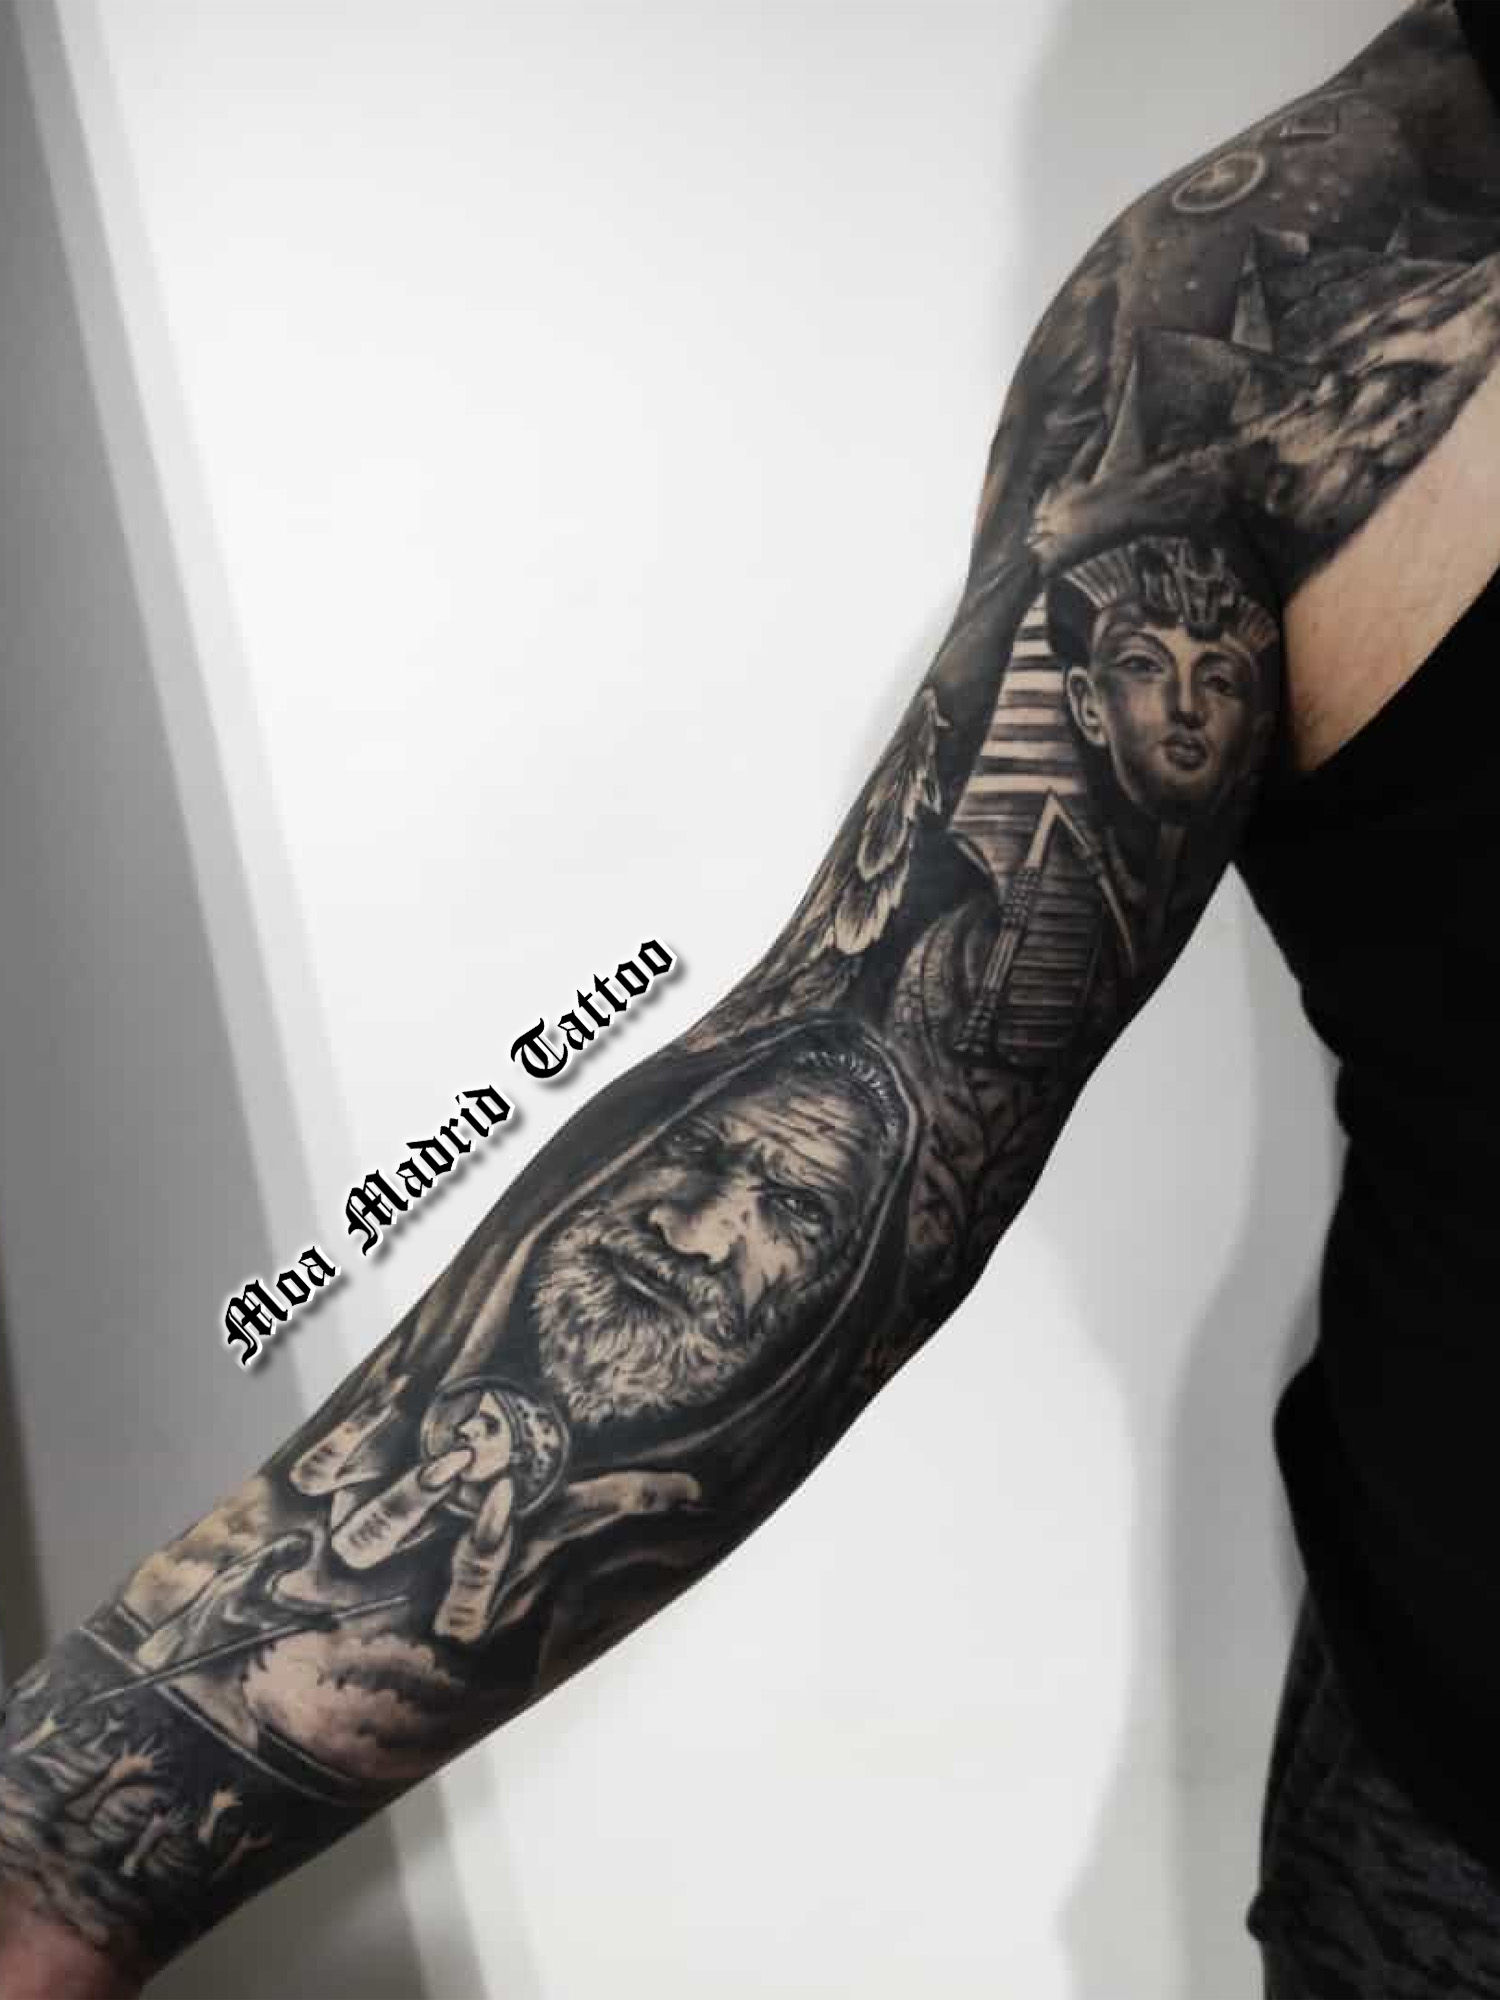 Tatuaje mitología clásica grecorromana Caronte en brazo entero tatuado